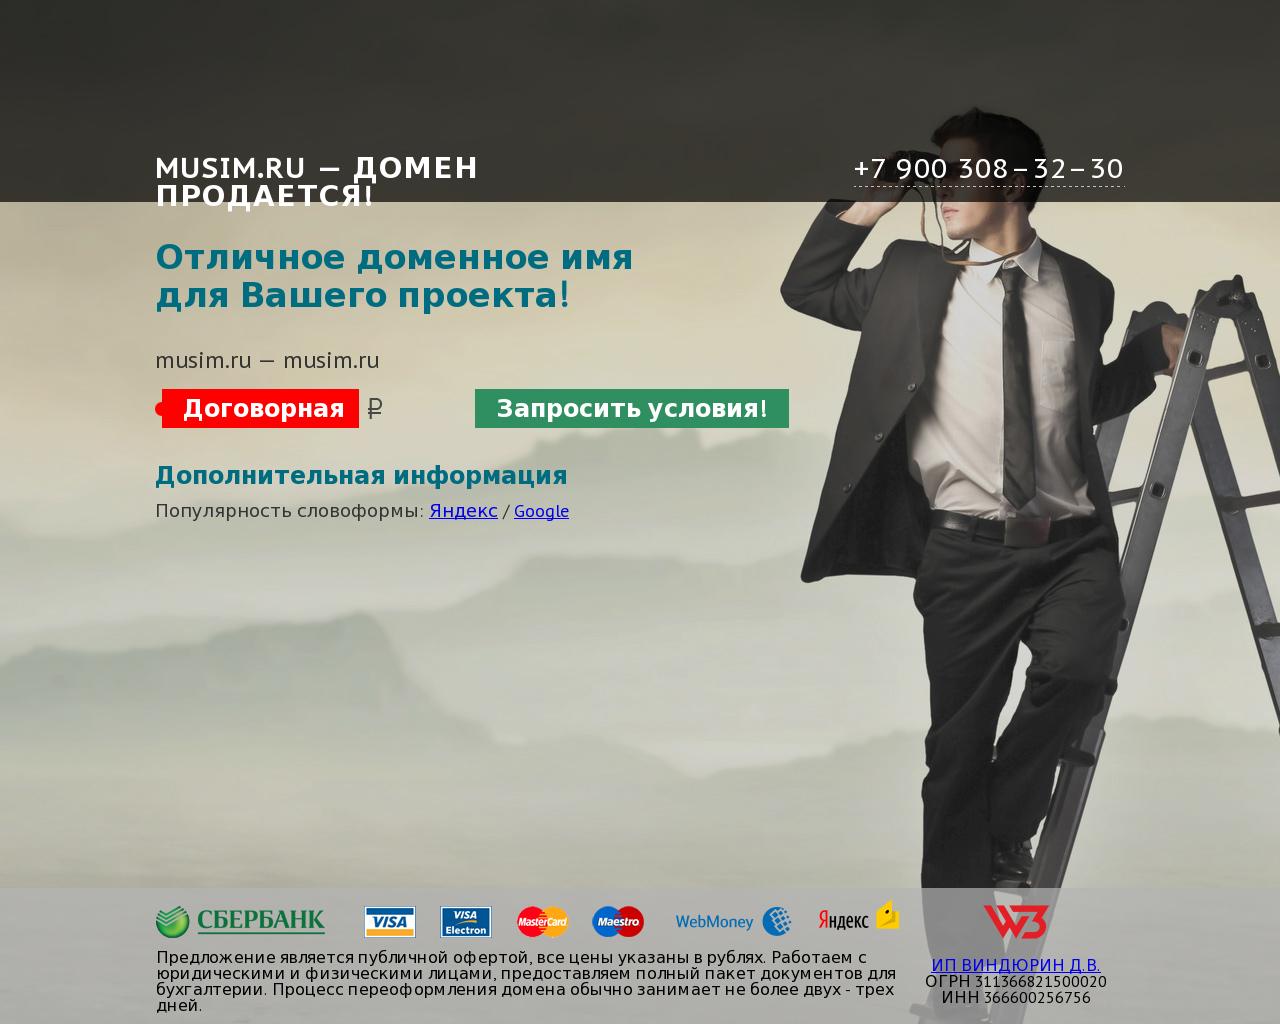 Изображение сайта musim.ru в разрешении 1280x1024